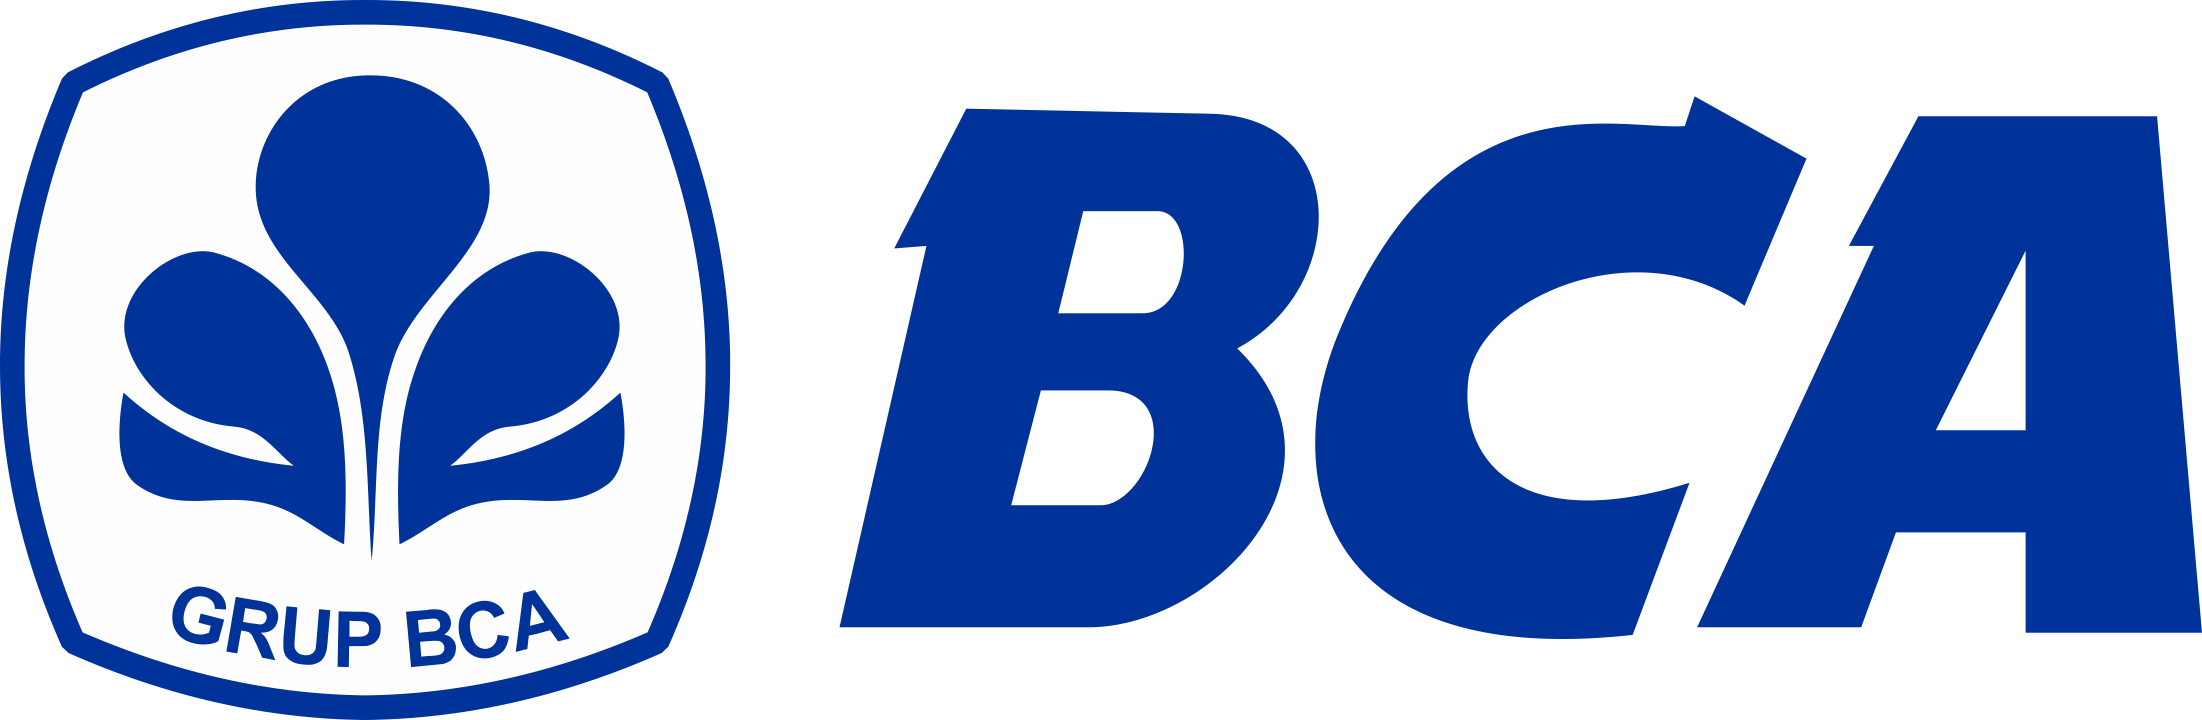 Bank-BCA-Logo-PNG-720p-FileVector69-1-1.png